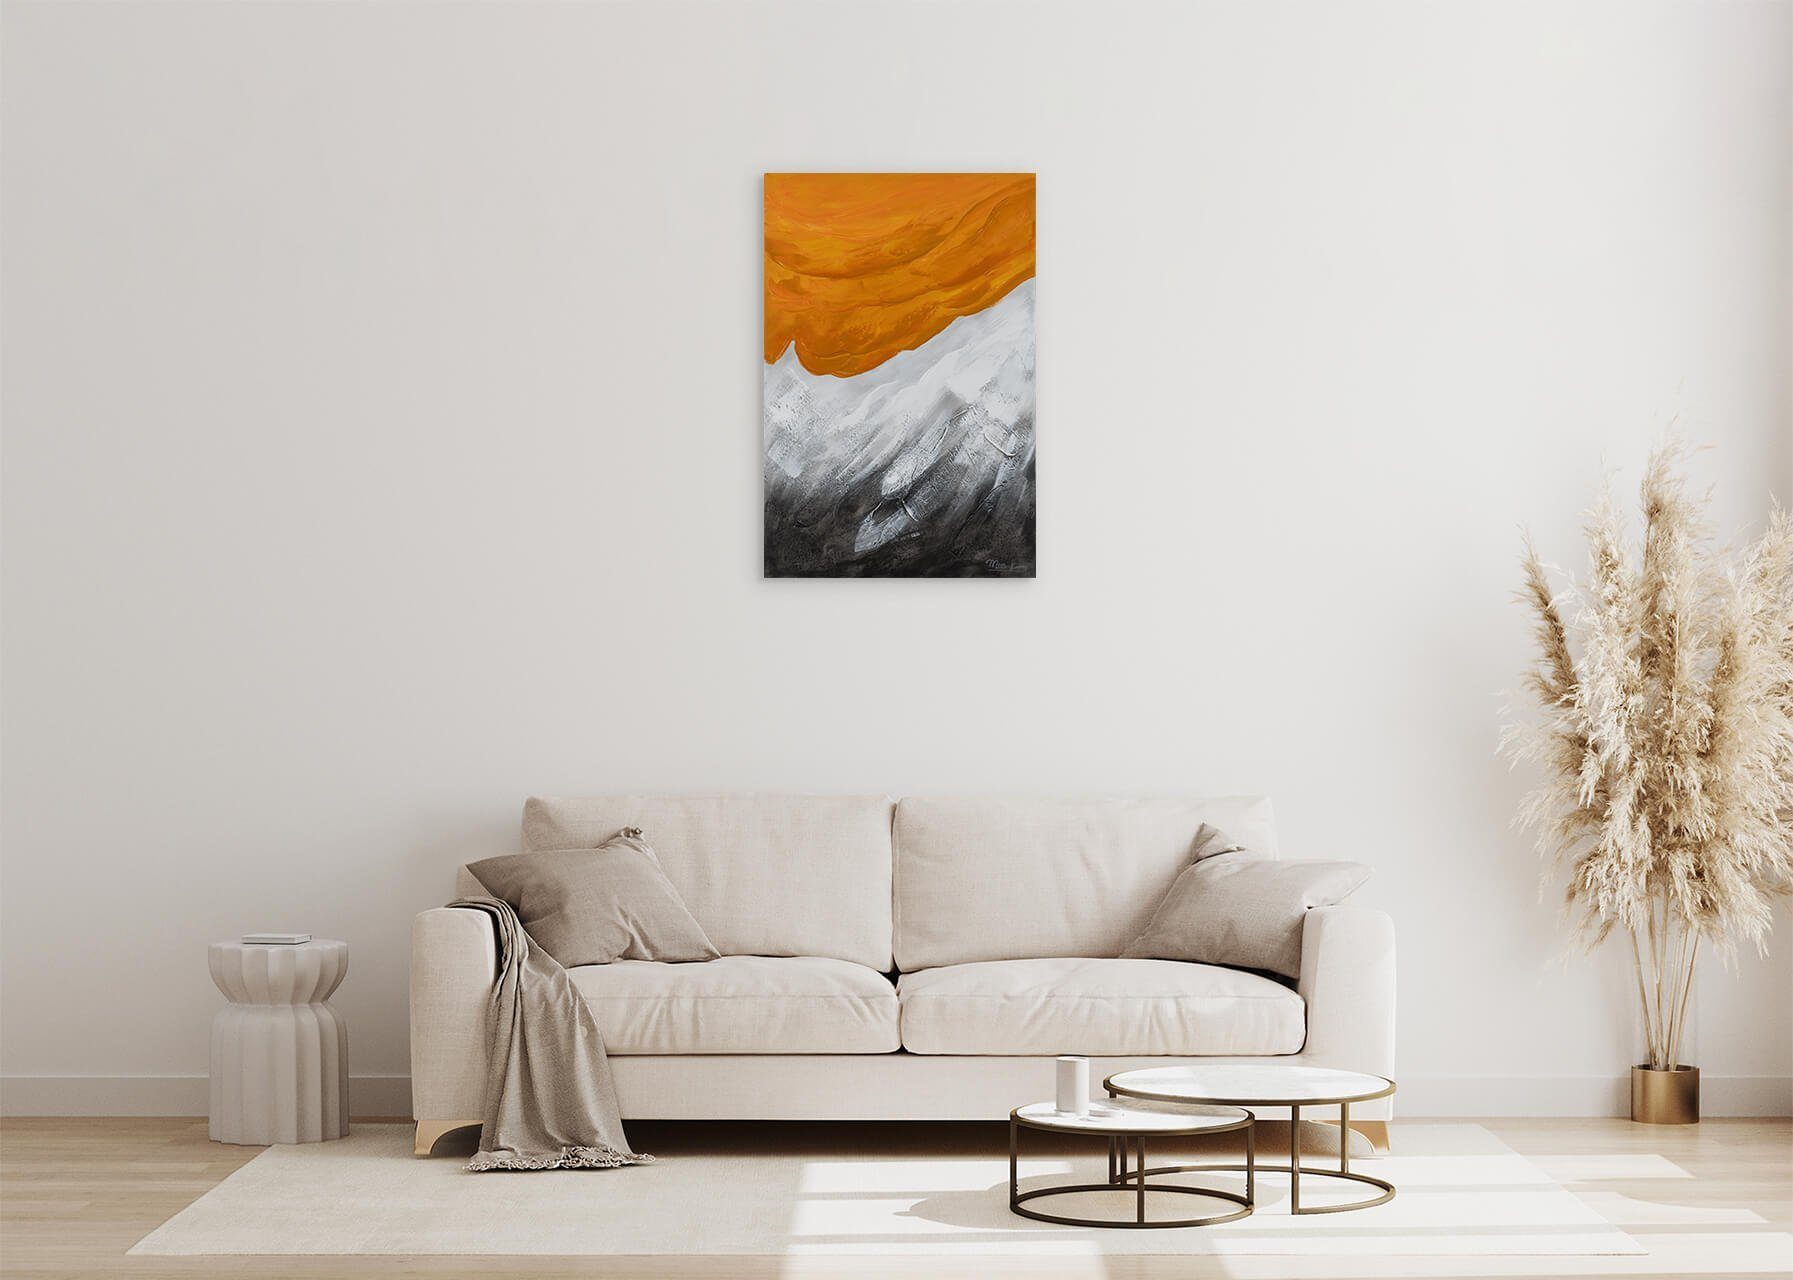 KUNSTLOFT Wohnzimmer Wandbild Leinwandbild Orange cm, 100% HANDGEMALT Gemälde 60x90 Evening